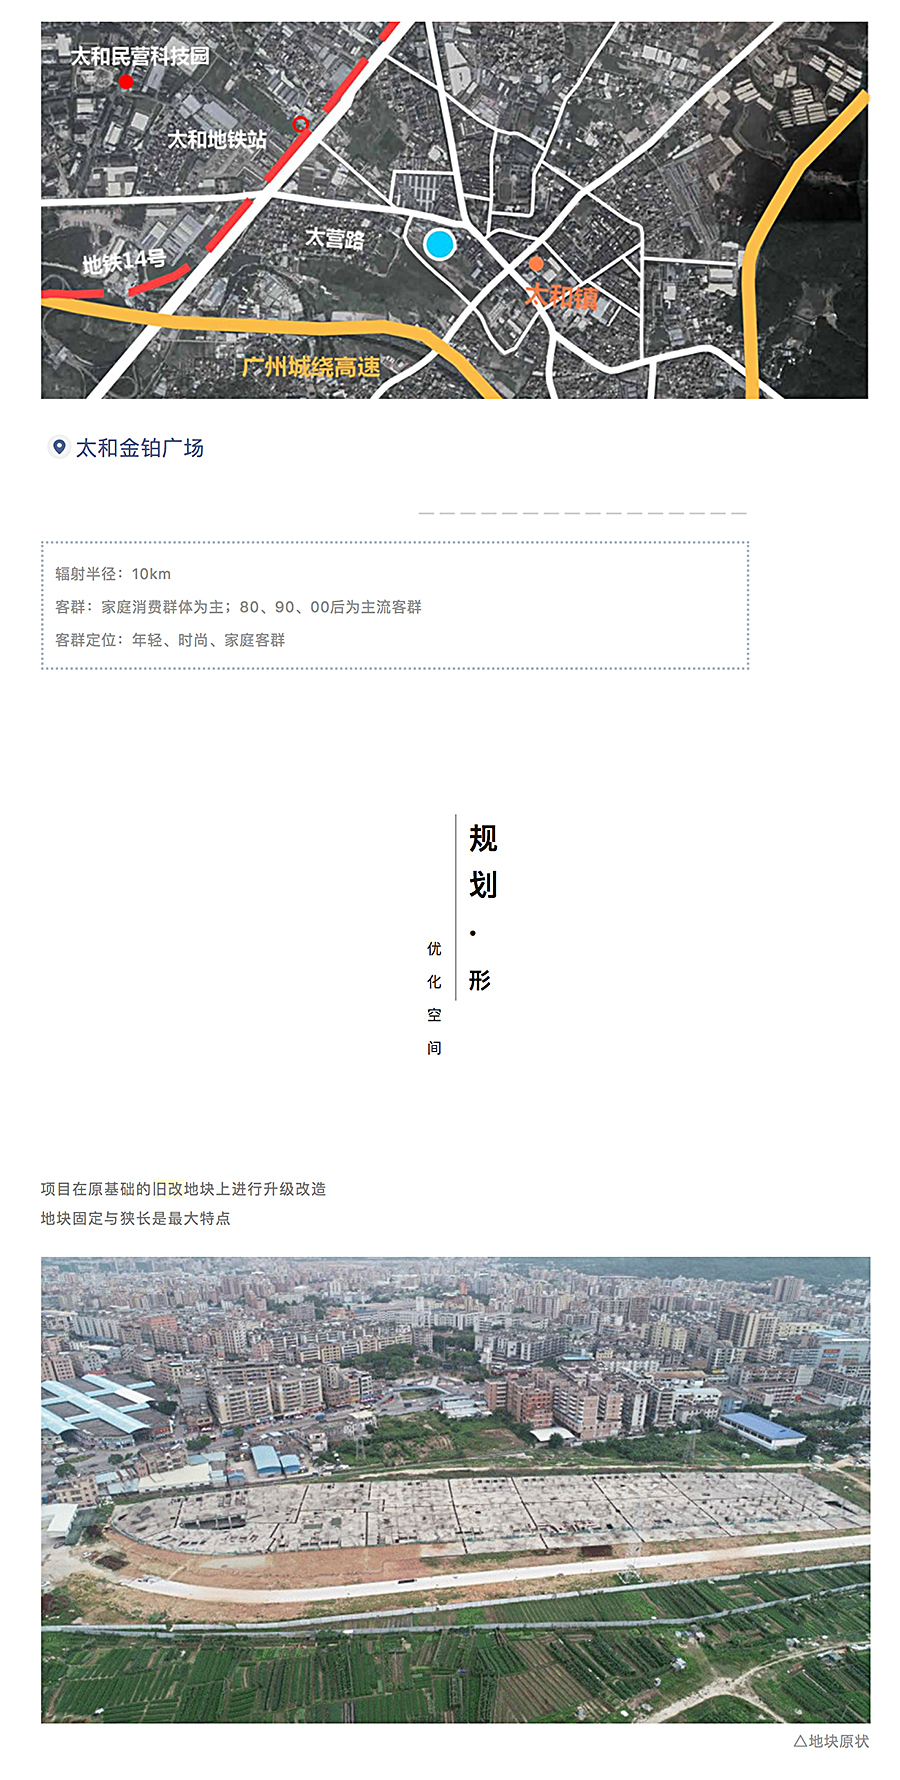 重构感知空间丨太和城商业广场_0004_图层-5.jpg